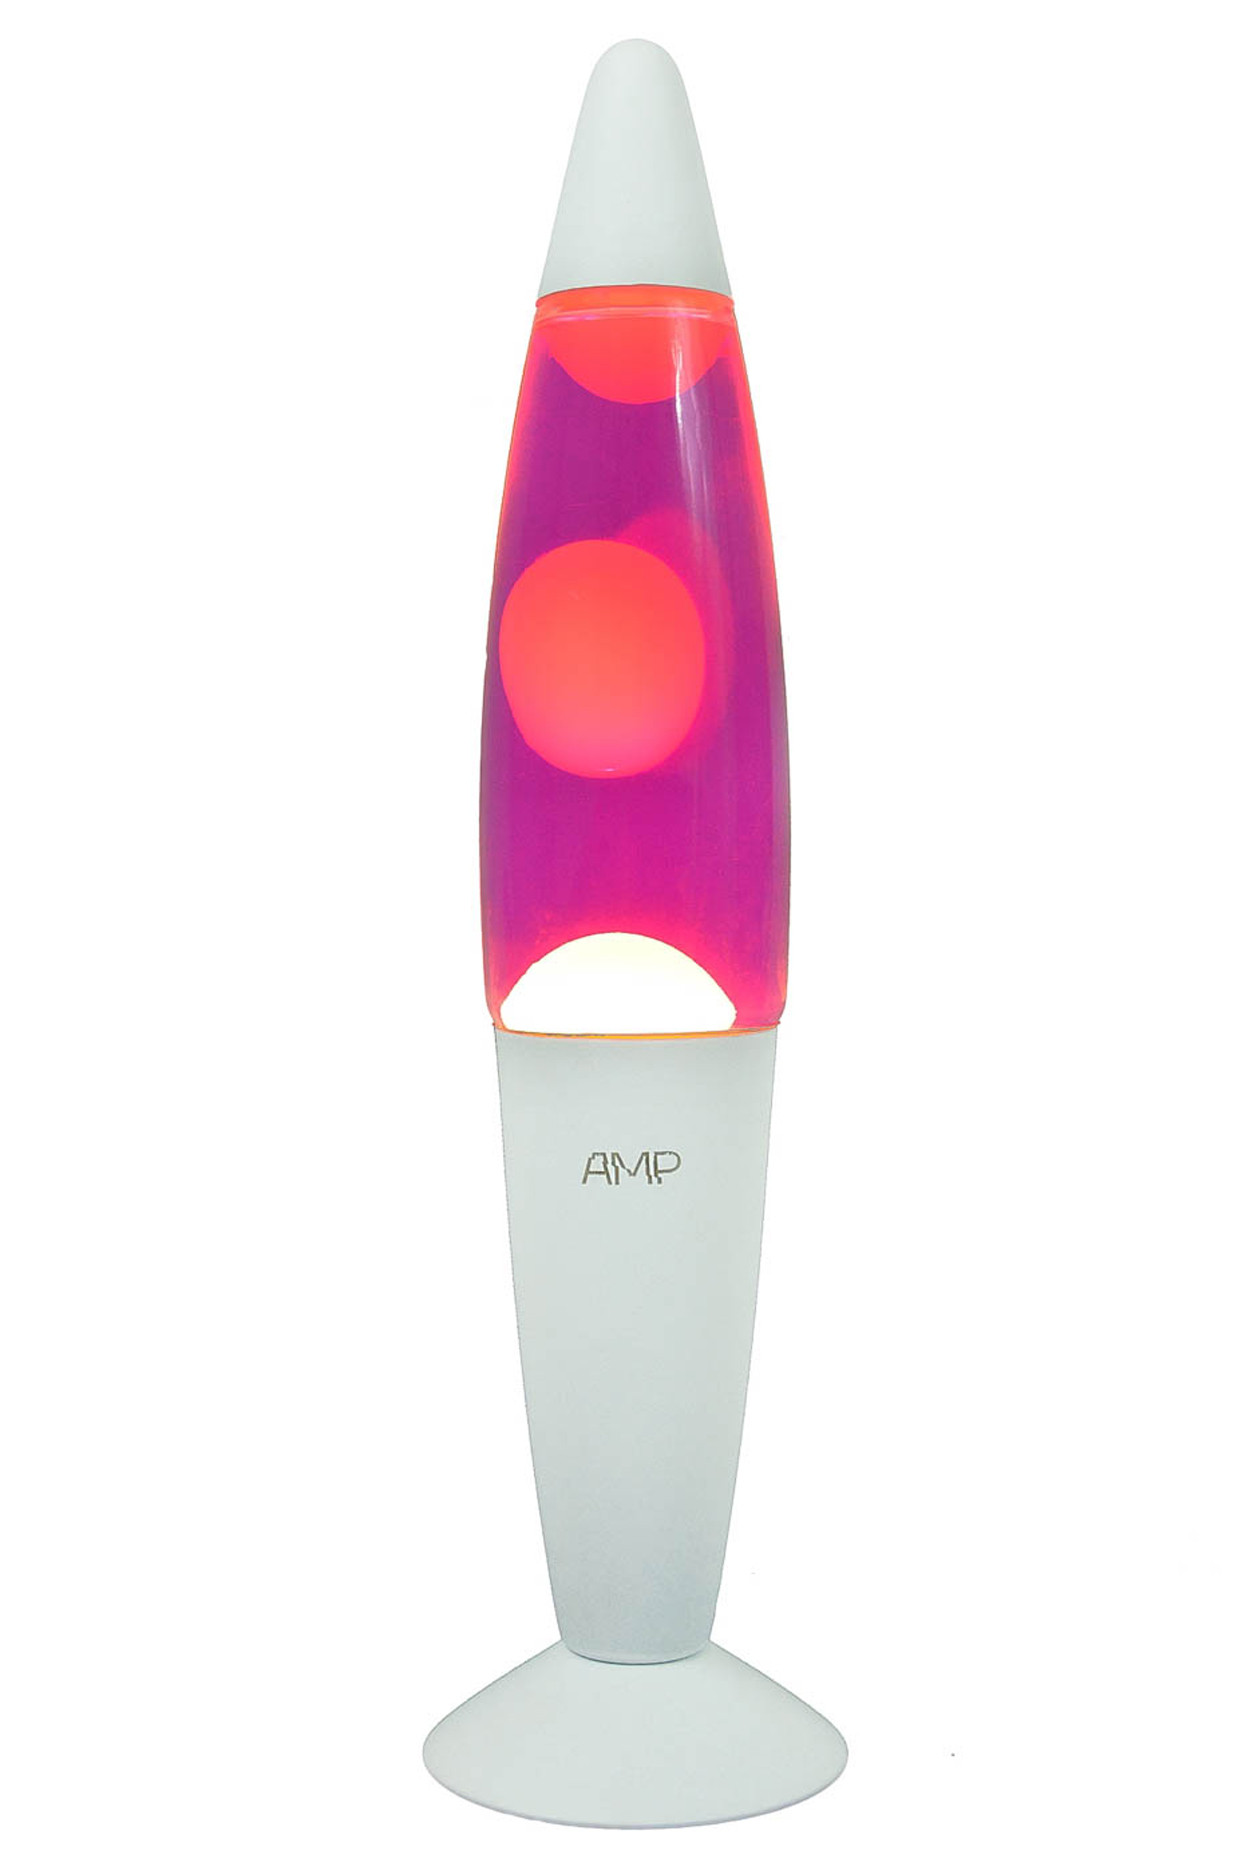 Лава лампа Amperia Rocket Белая Розовая 35 см